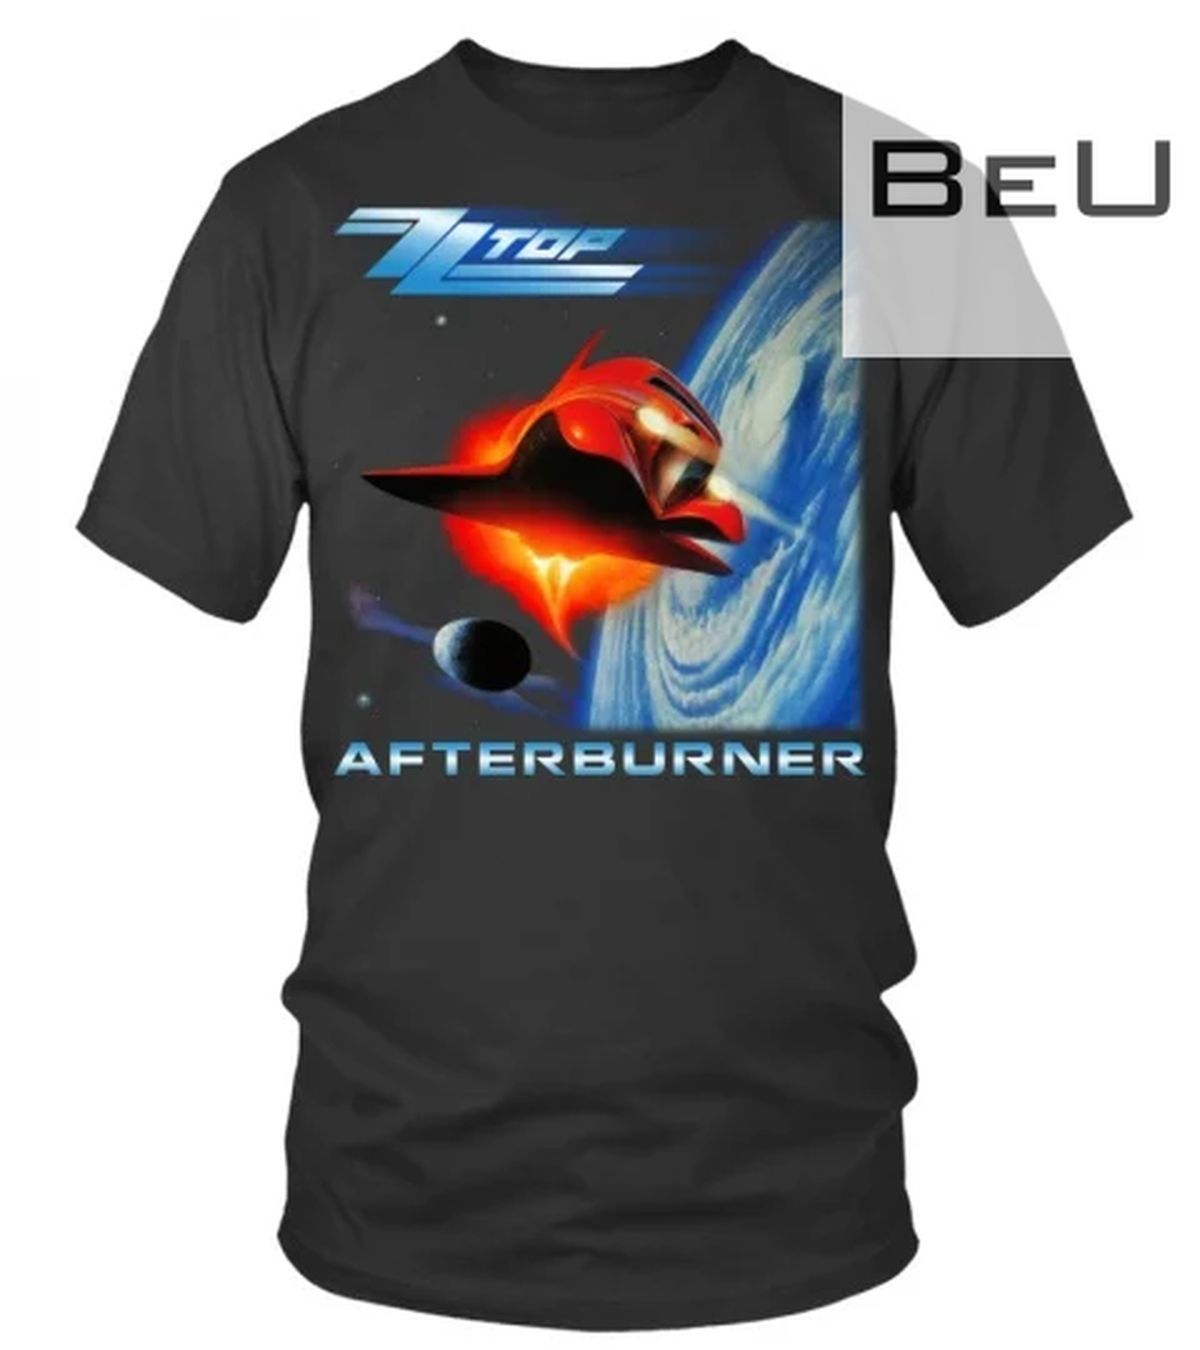 Z Z Top Afterburner Shirt